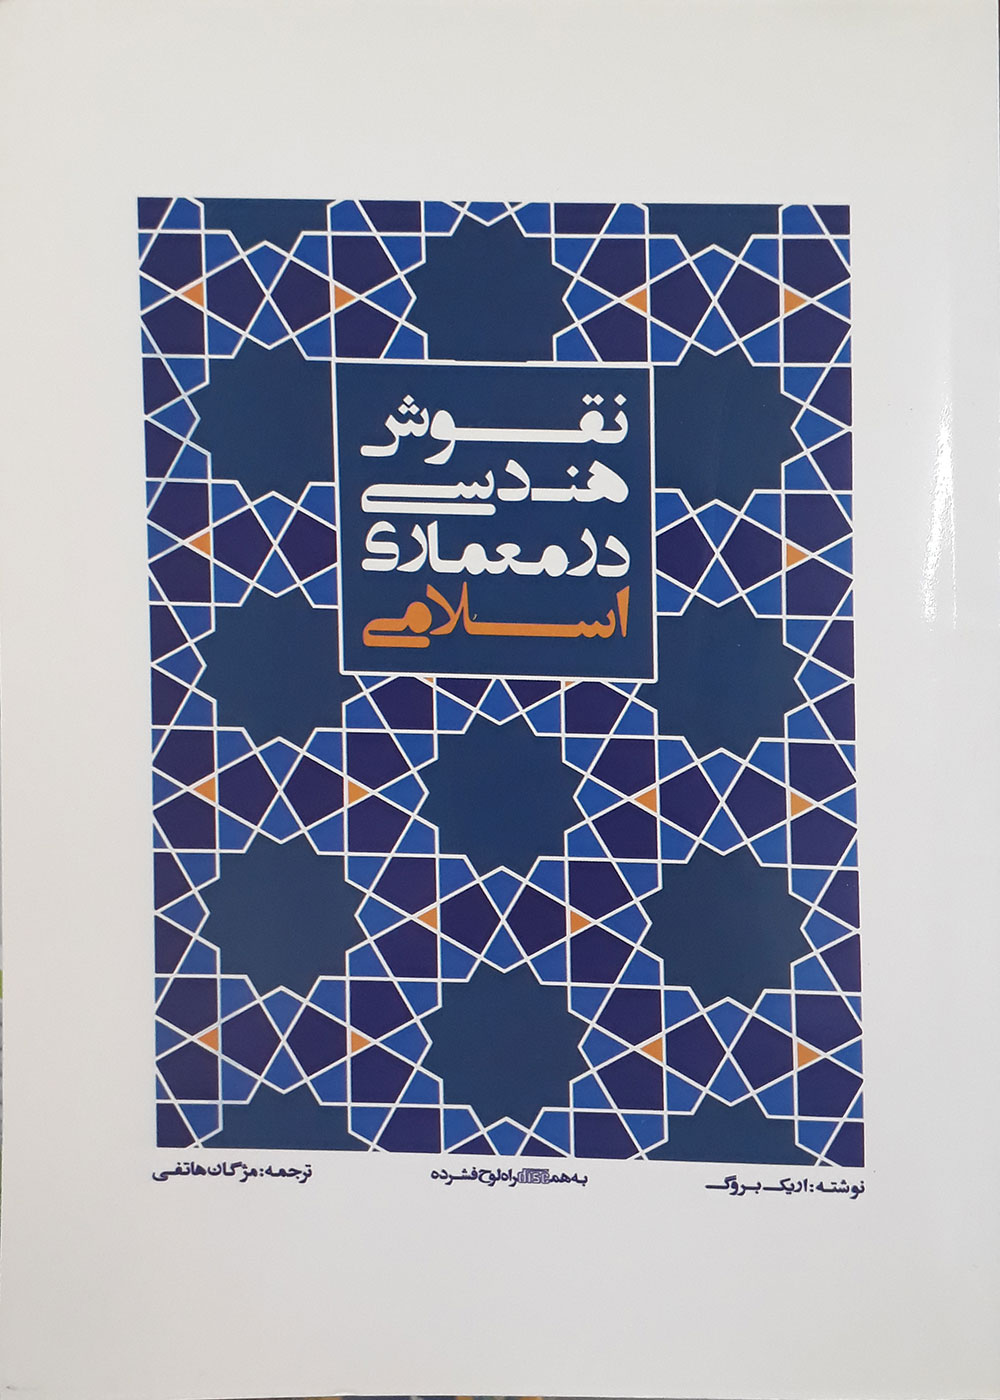 کتاب نقوش هندسی در معماری اسلامی اریک بروگ مژگان هاتفی